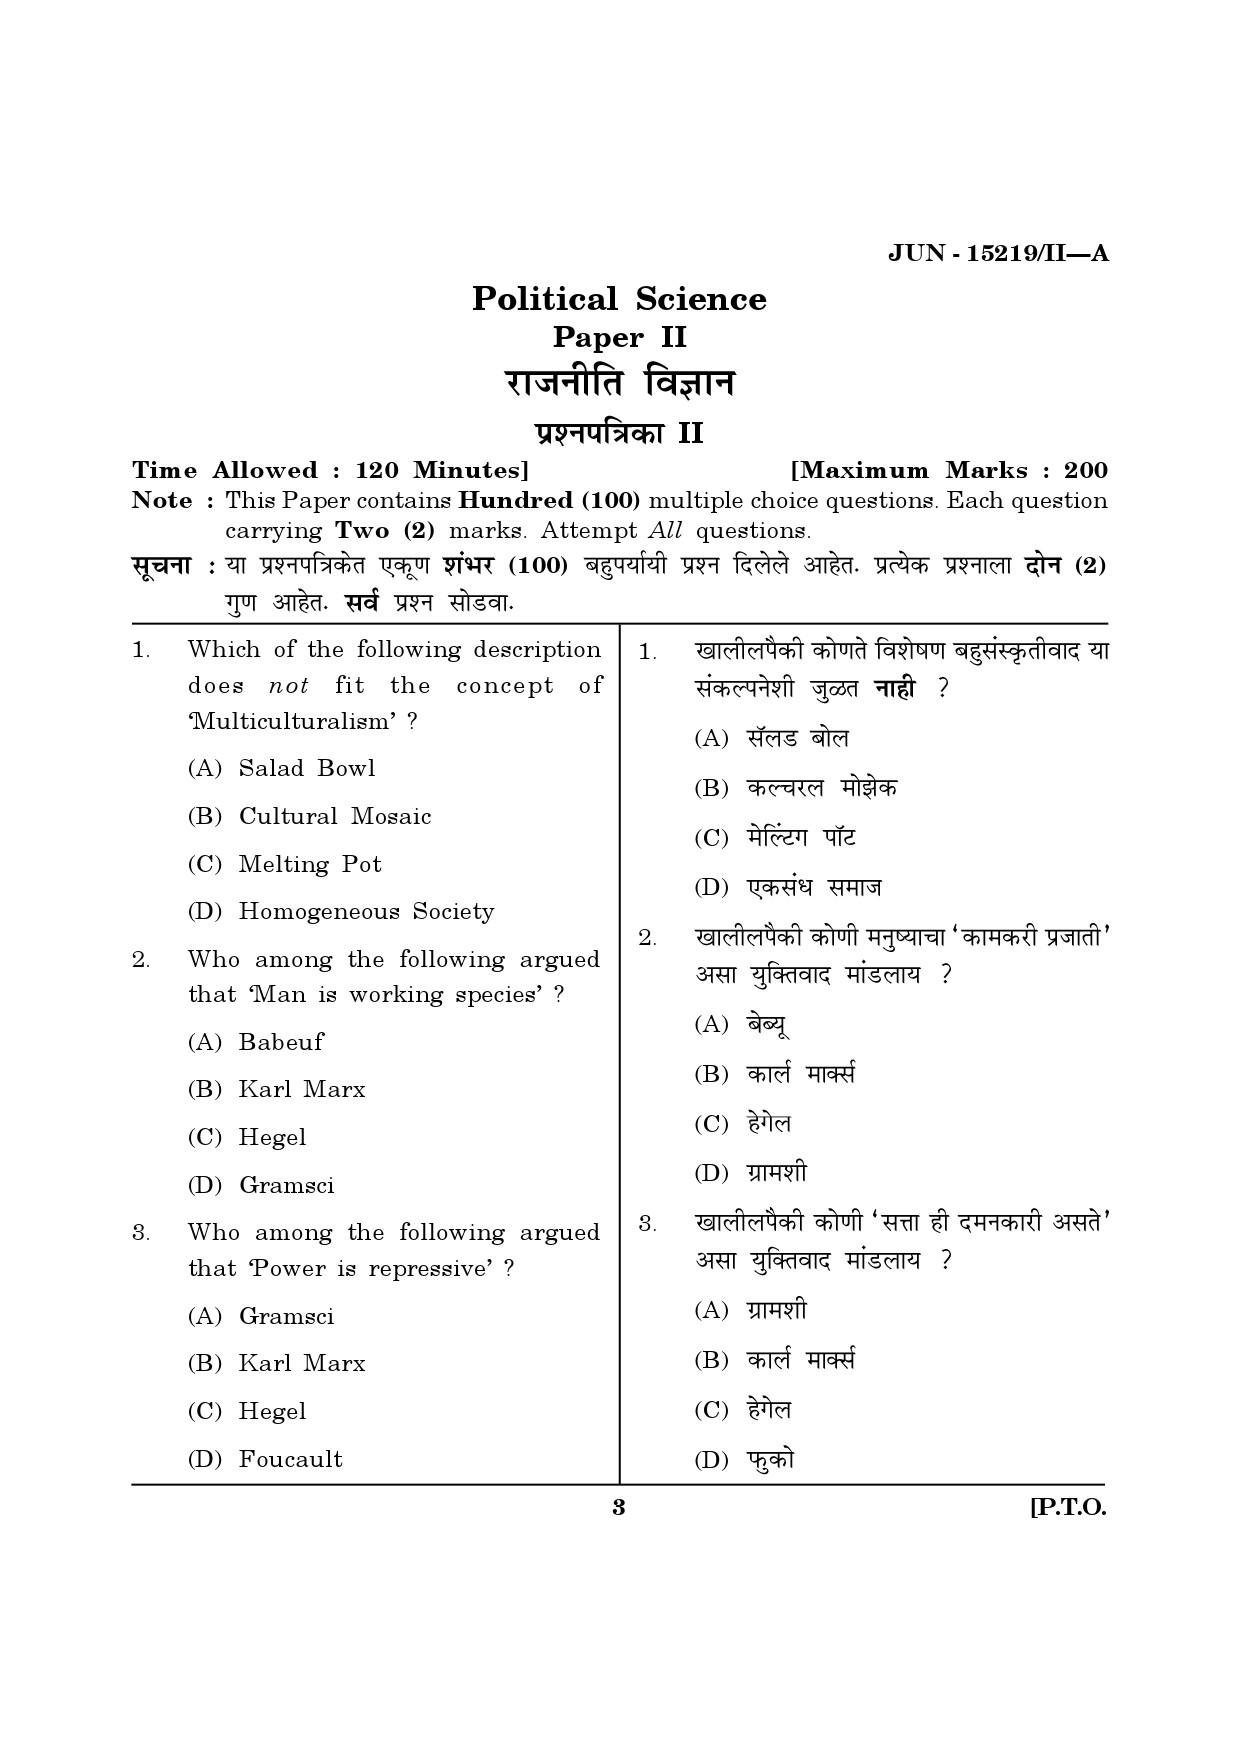 Maharashtra SET Political Science Question Paper II June 2019 2